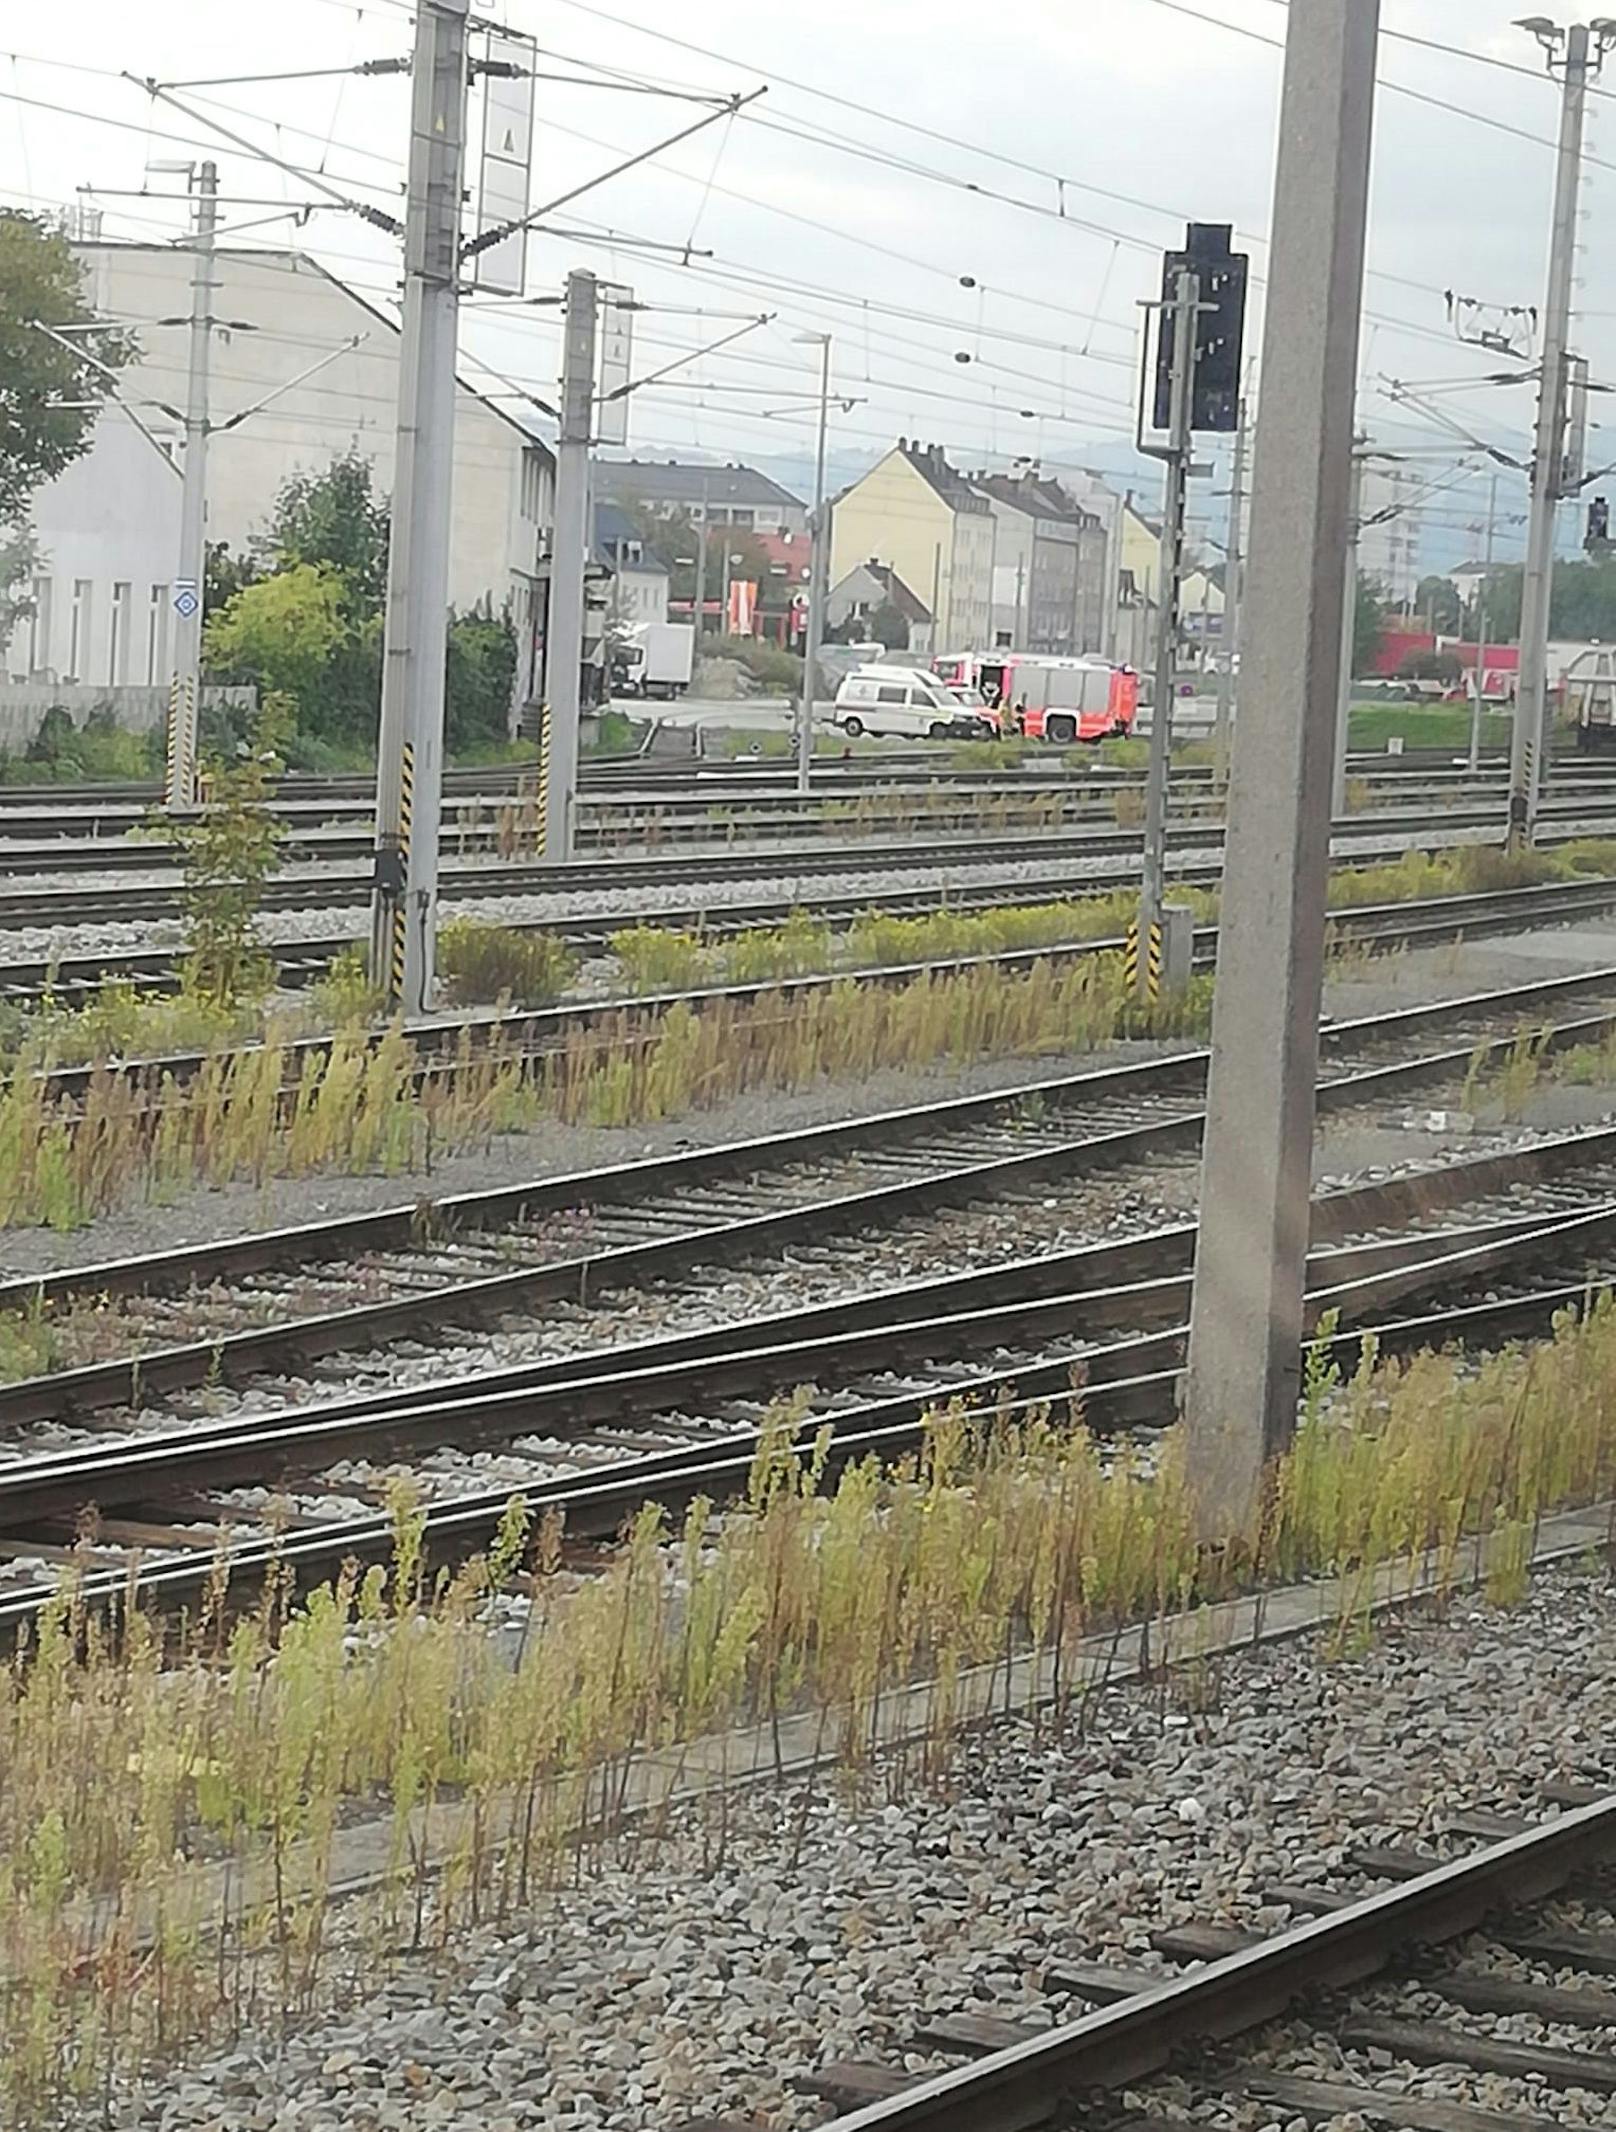 Am Sonntag kam ein Zug nahe Linz zum Stillstand.